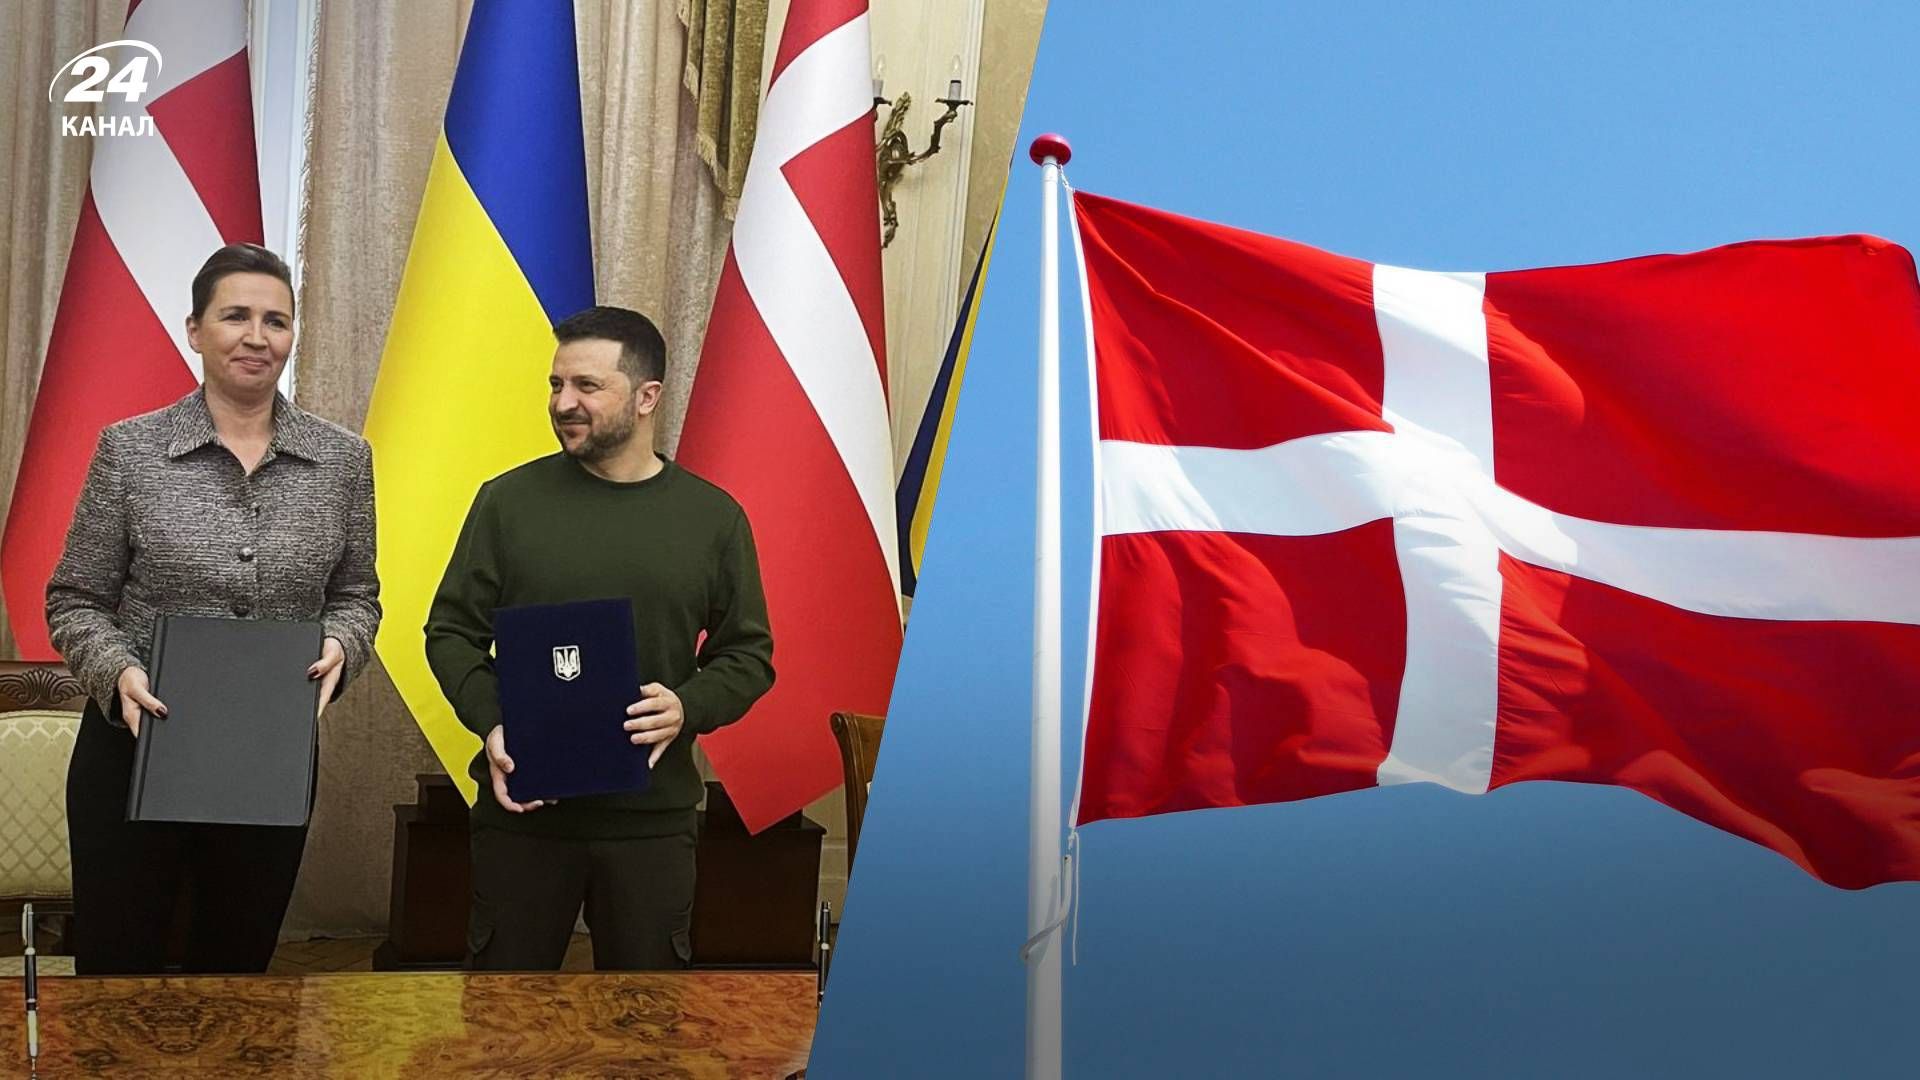 Метте Фредериксен рассказала о соглашении по безопасности между Данией и Украиной - 24 Канал